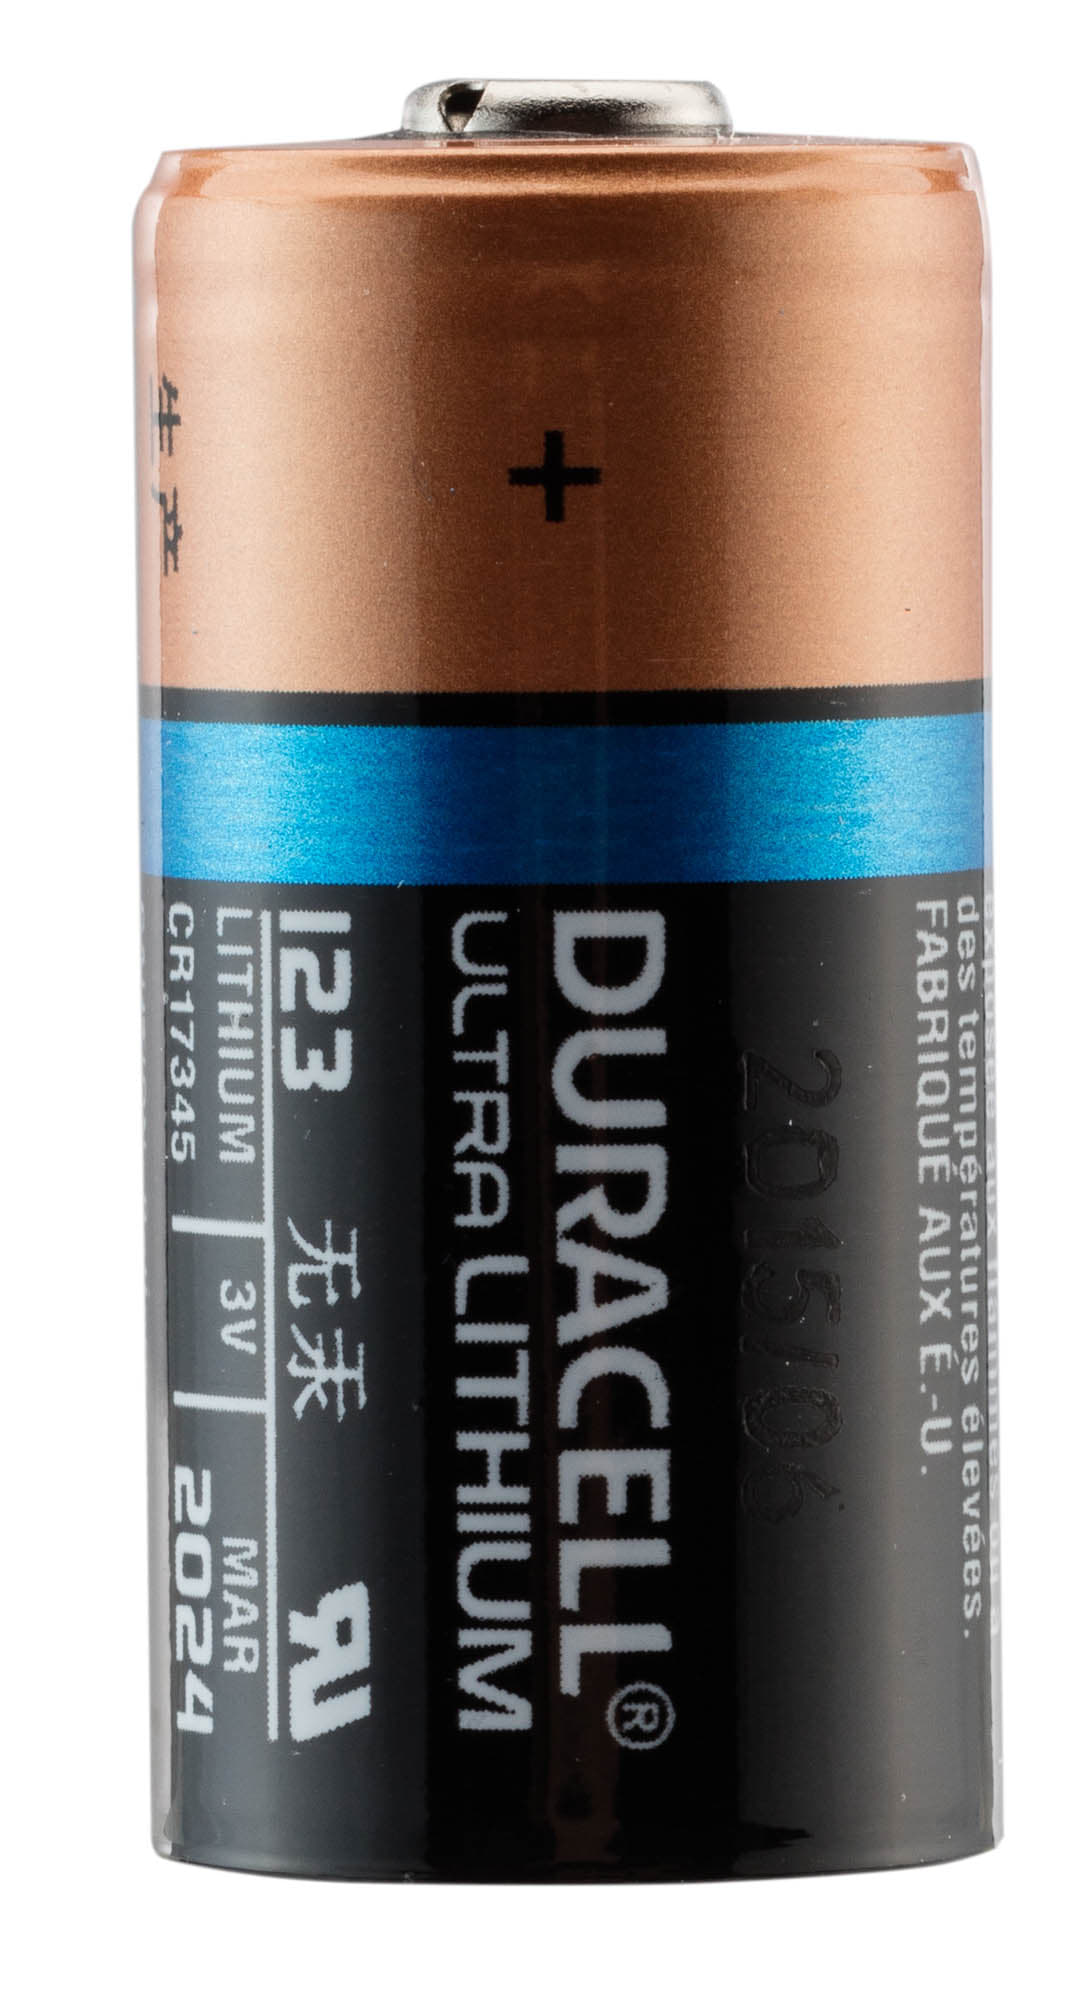 Pile CR123 Lithium 3V blister de 2 piles CR123 Duracell batterie